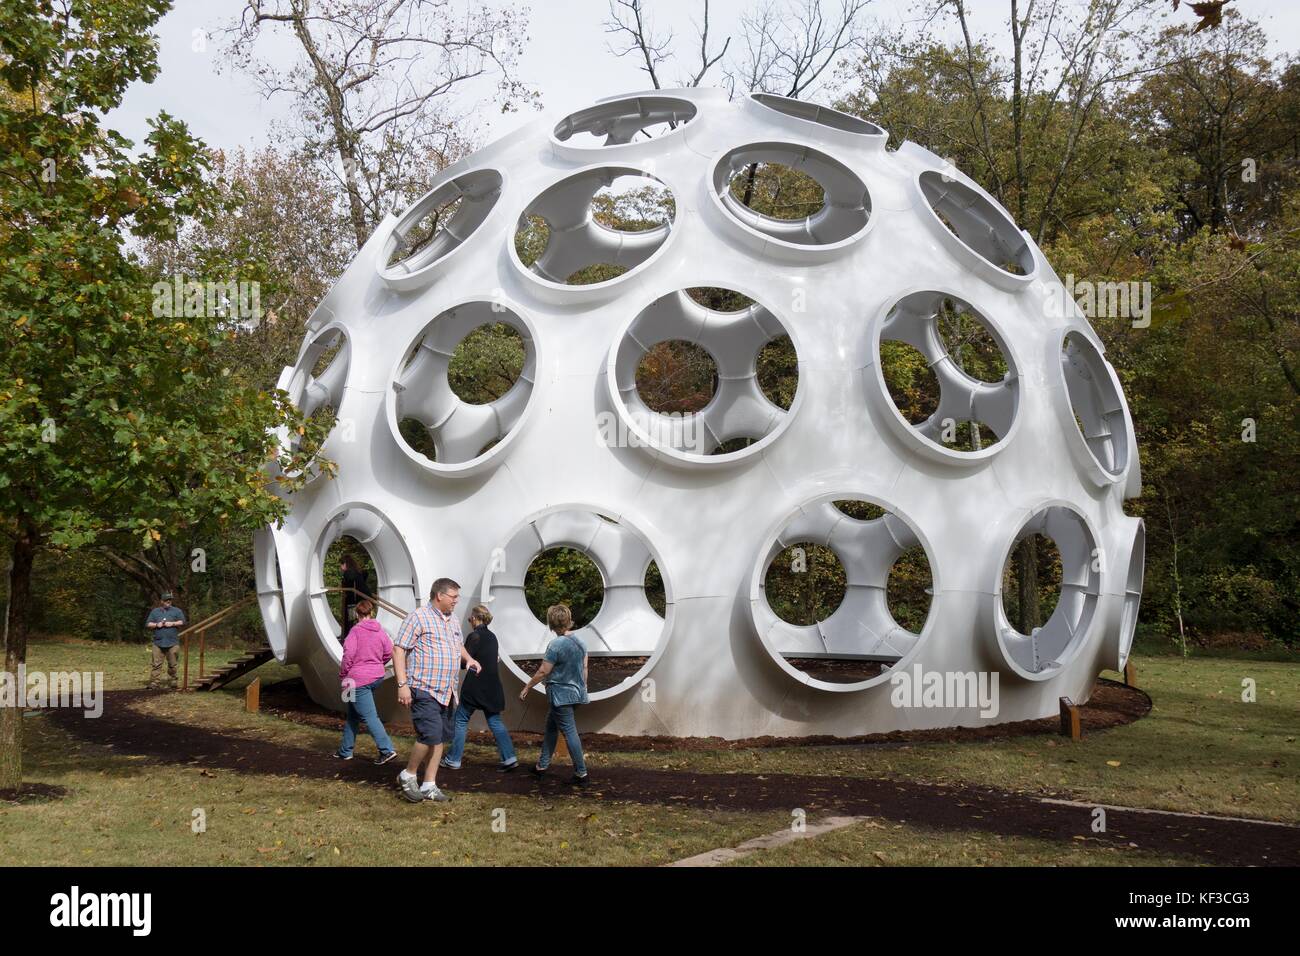 The Fly's Eye Dome, designed by Buckminster Fuller, at Crystal Bridges art museum in Bentonville, Arkansas, US. Stock Photo